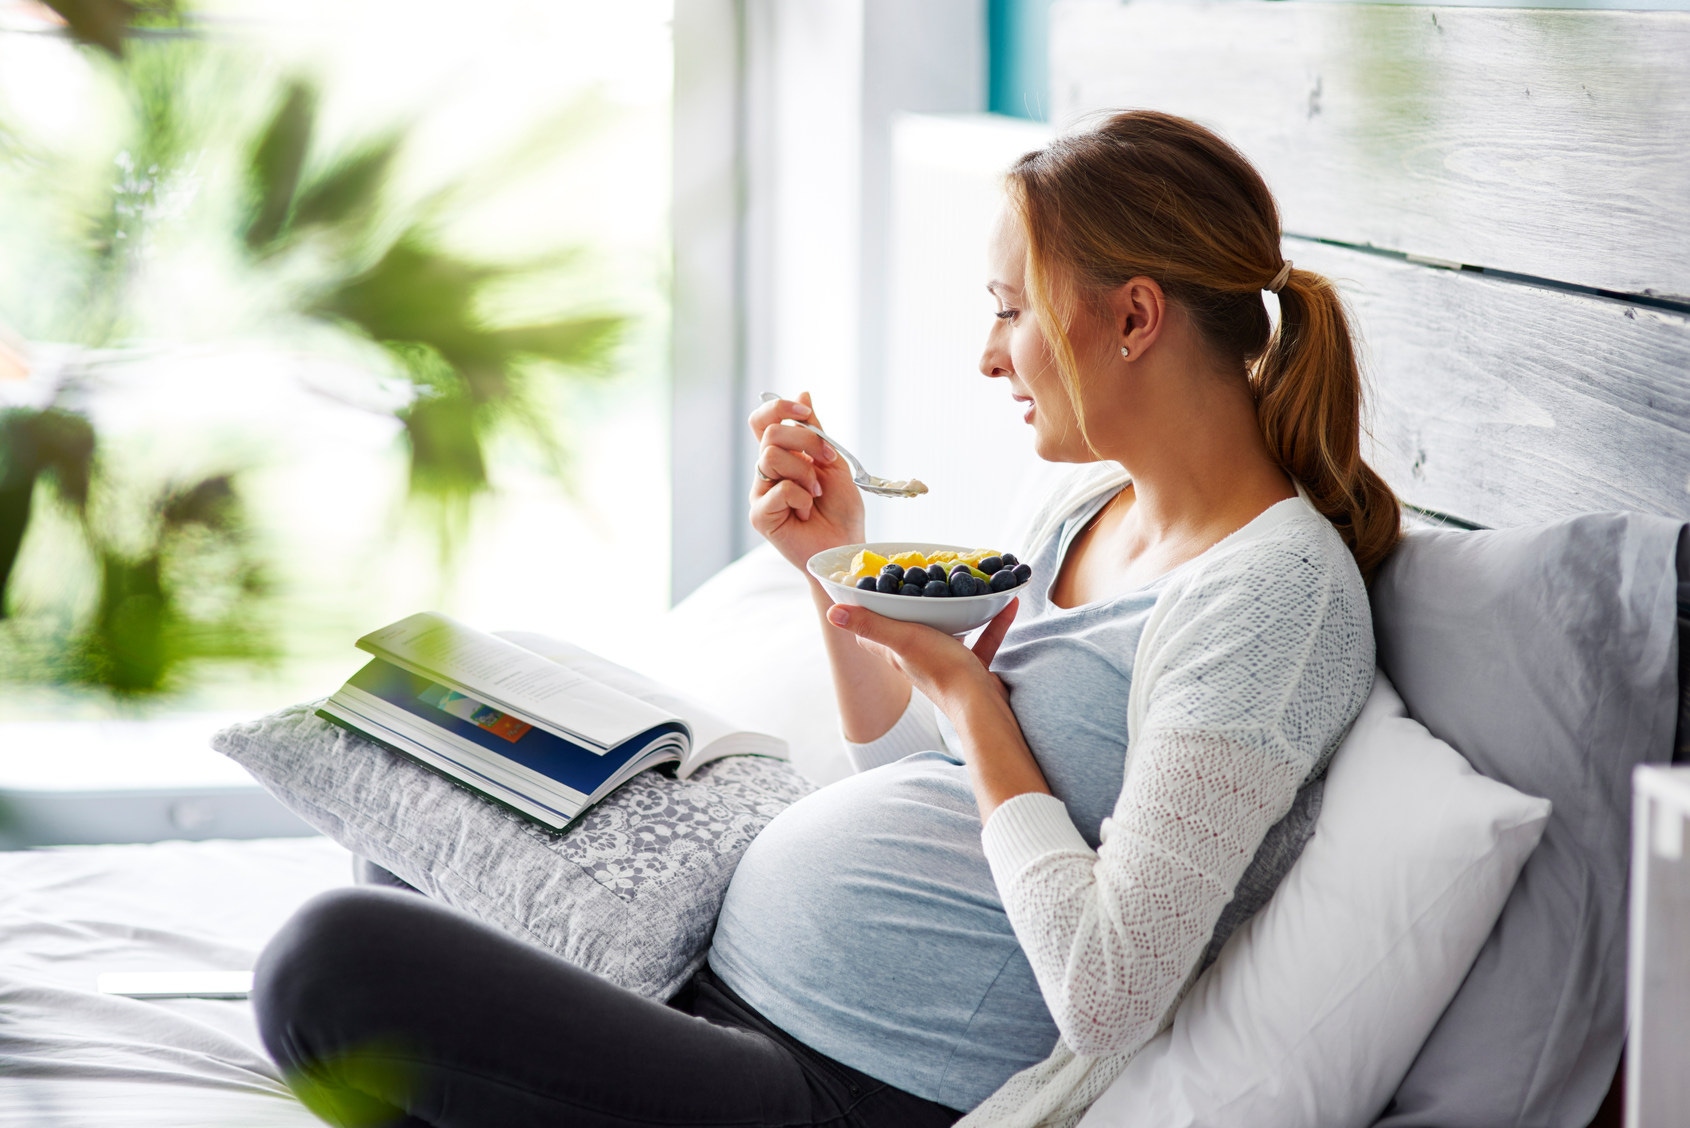 Mujer embarazada comiendo mientras lee un libro 